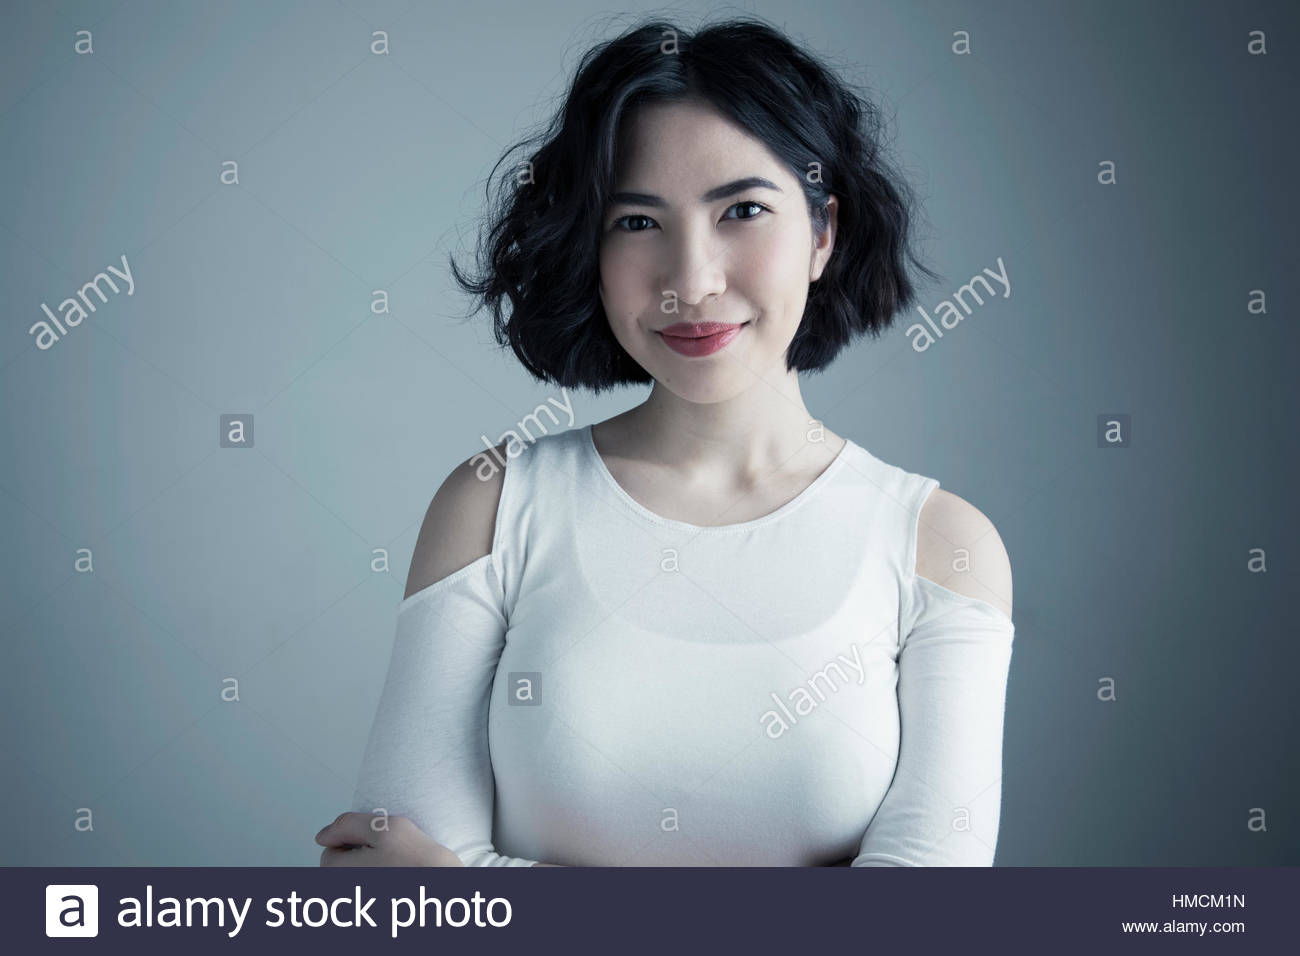 Portrait confiant mixed race jeune femme avec des cheveux noirs courts Banque D'Images